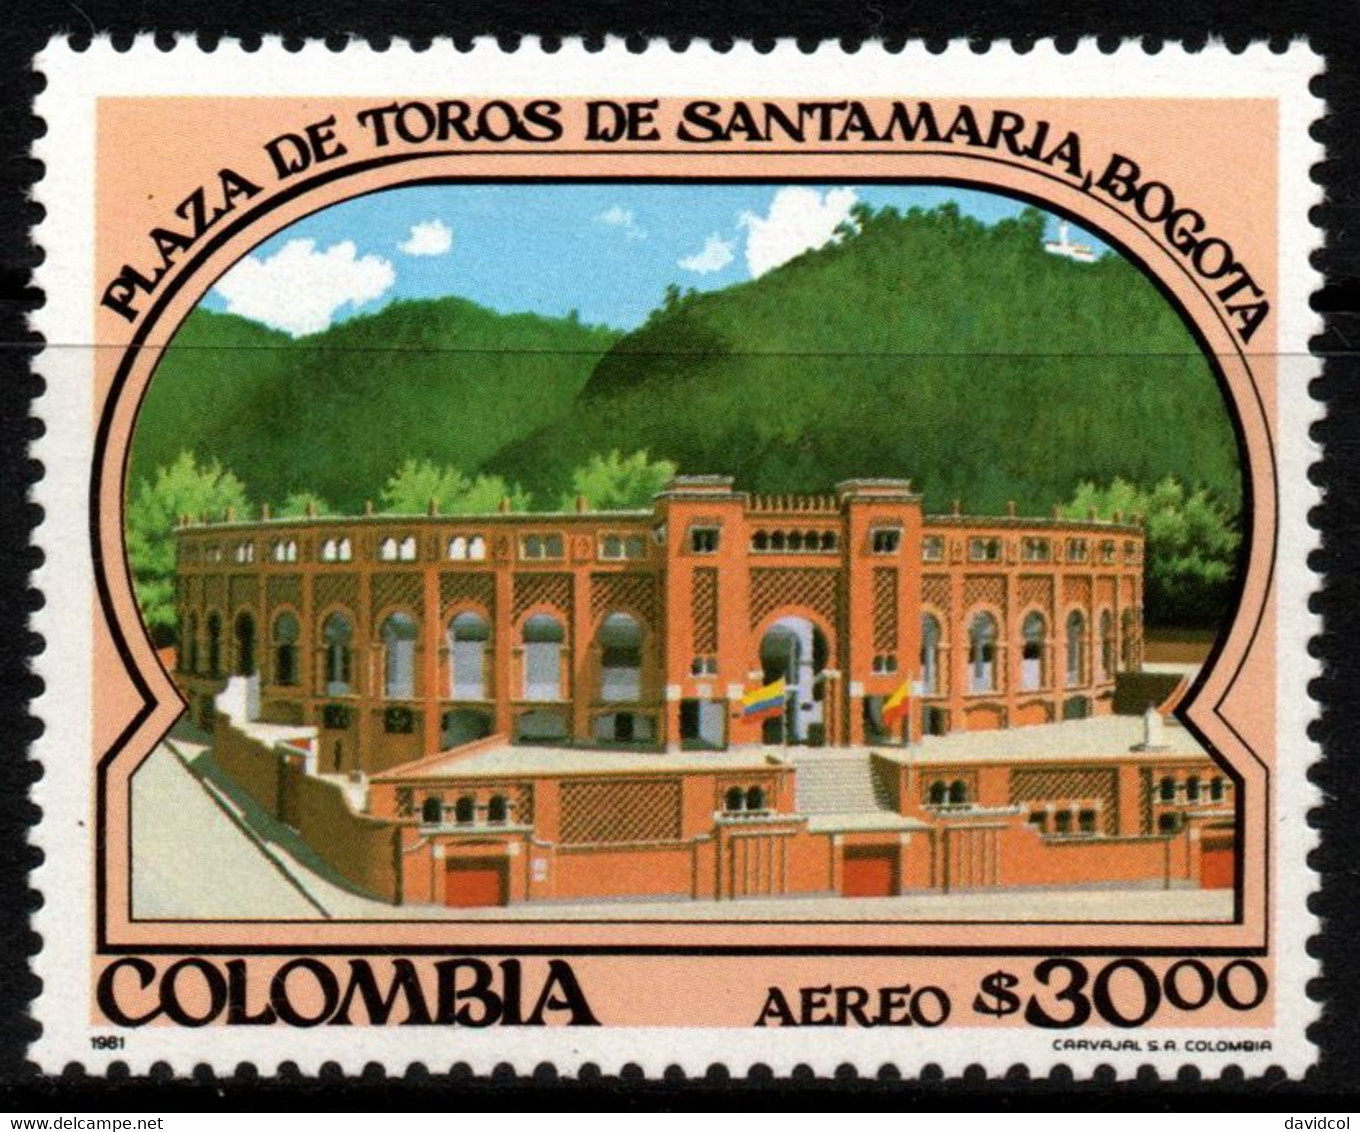 05- KOLUMBIEN - 1981- MI#:1474- MNH- BULLRING “LA SANTA MARIA” OF BOGOTA- - Colombia